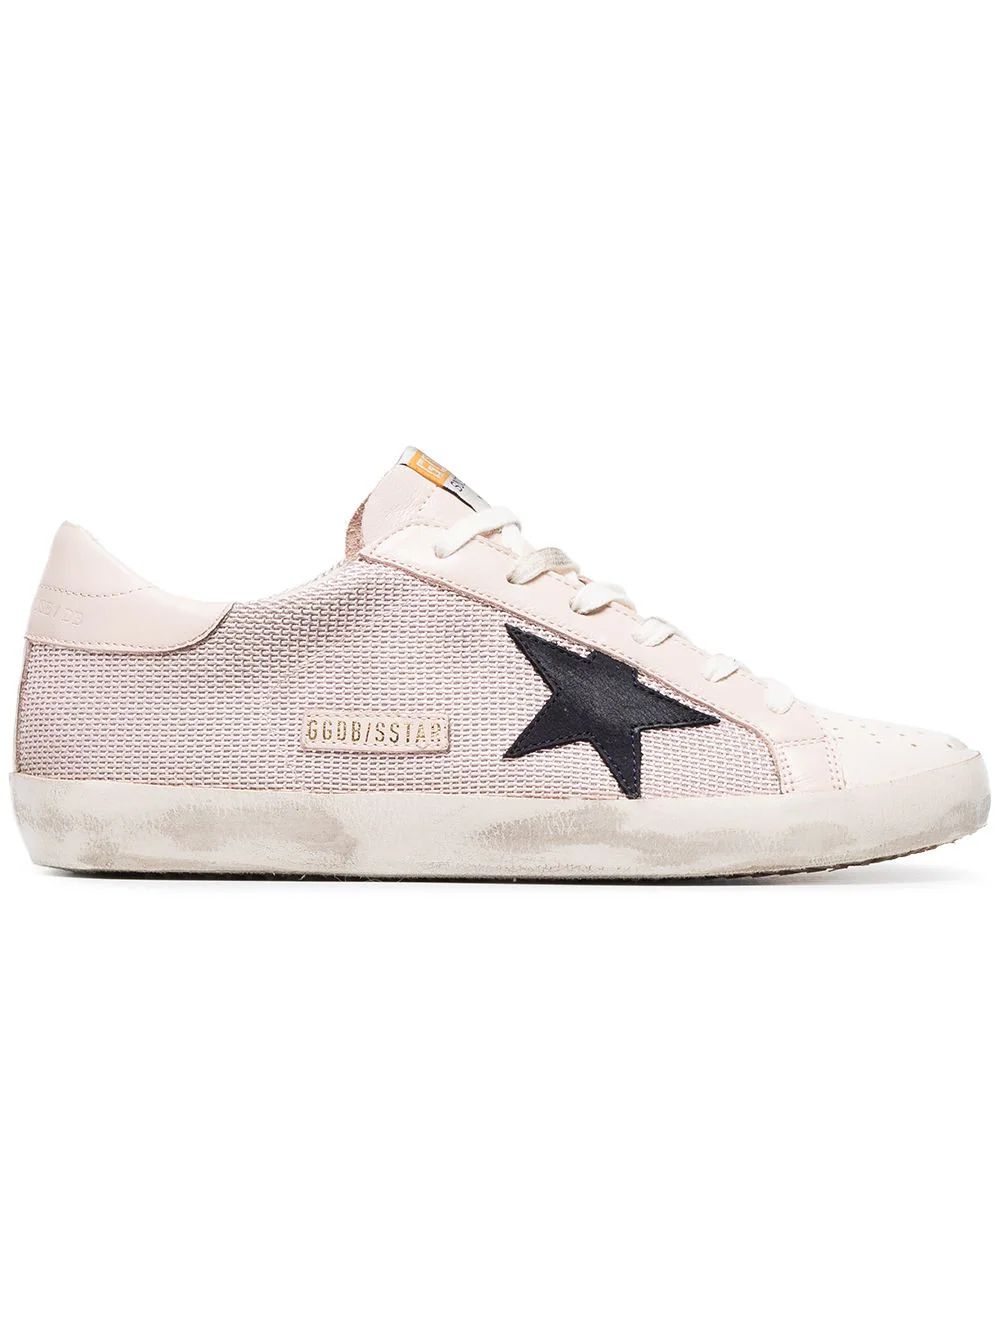 Golden Goose Deluxe Brand Superstar mesh sneakers - Pink | FarFetch US